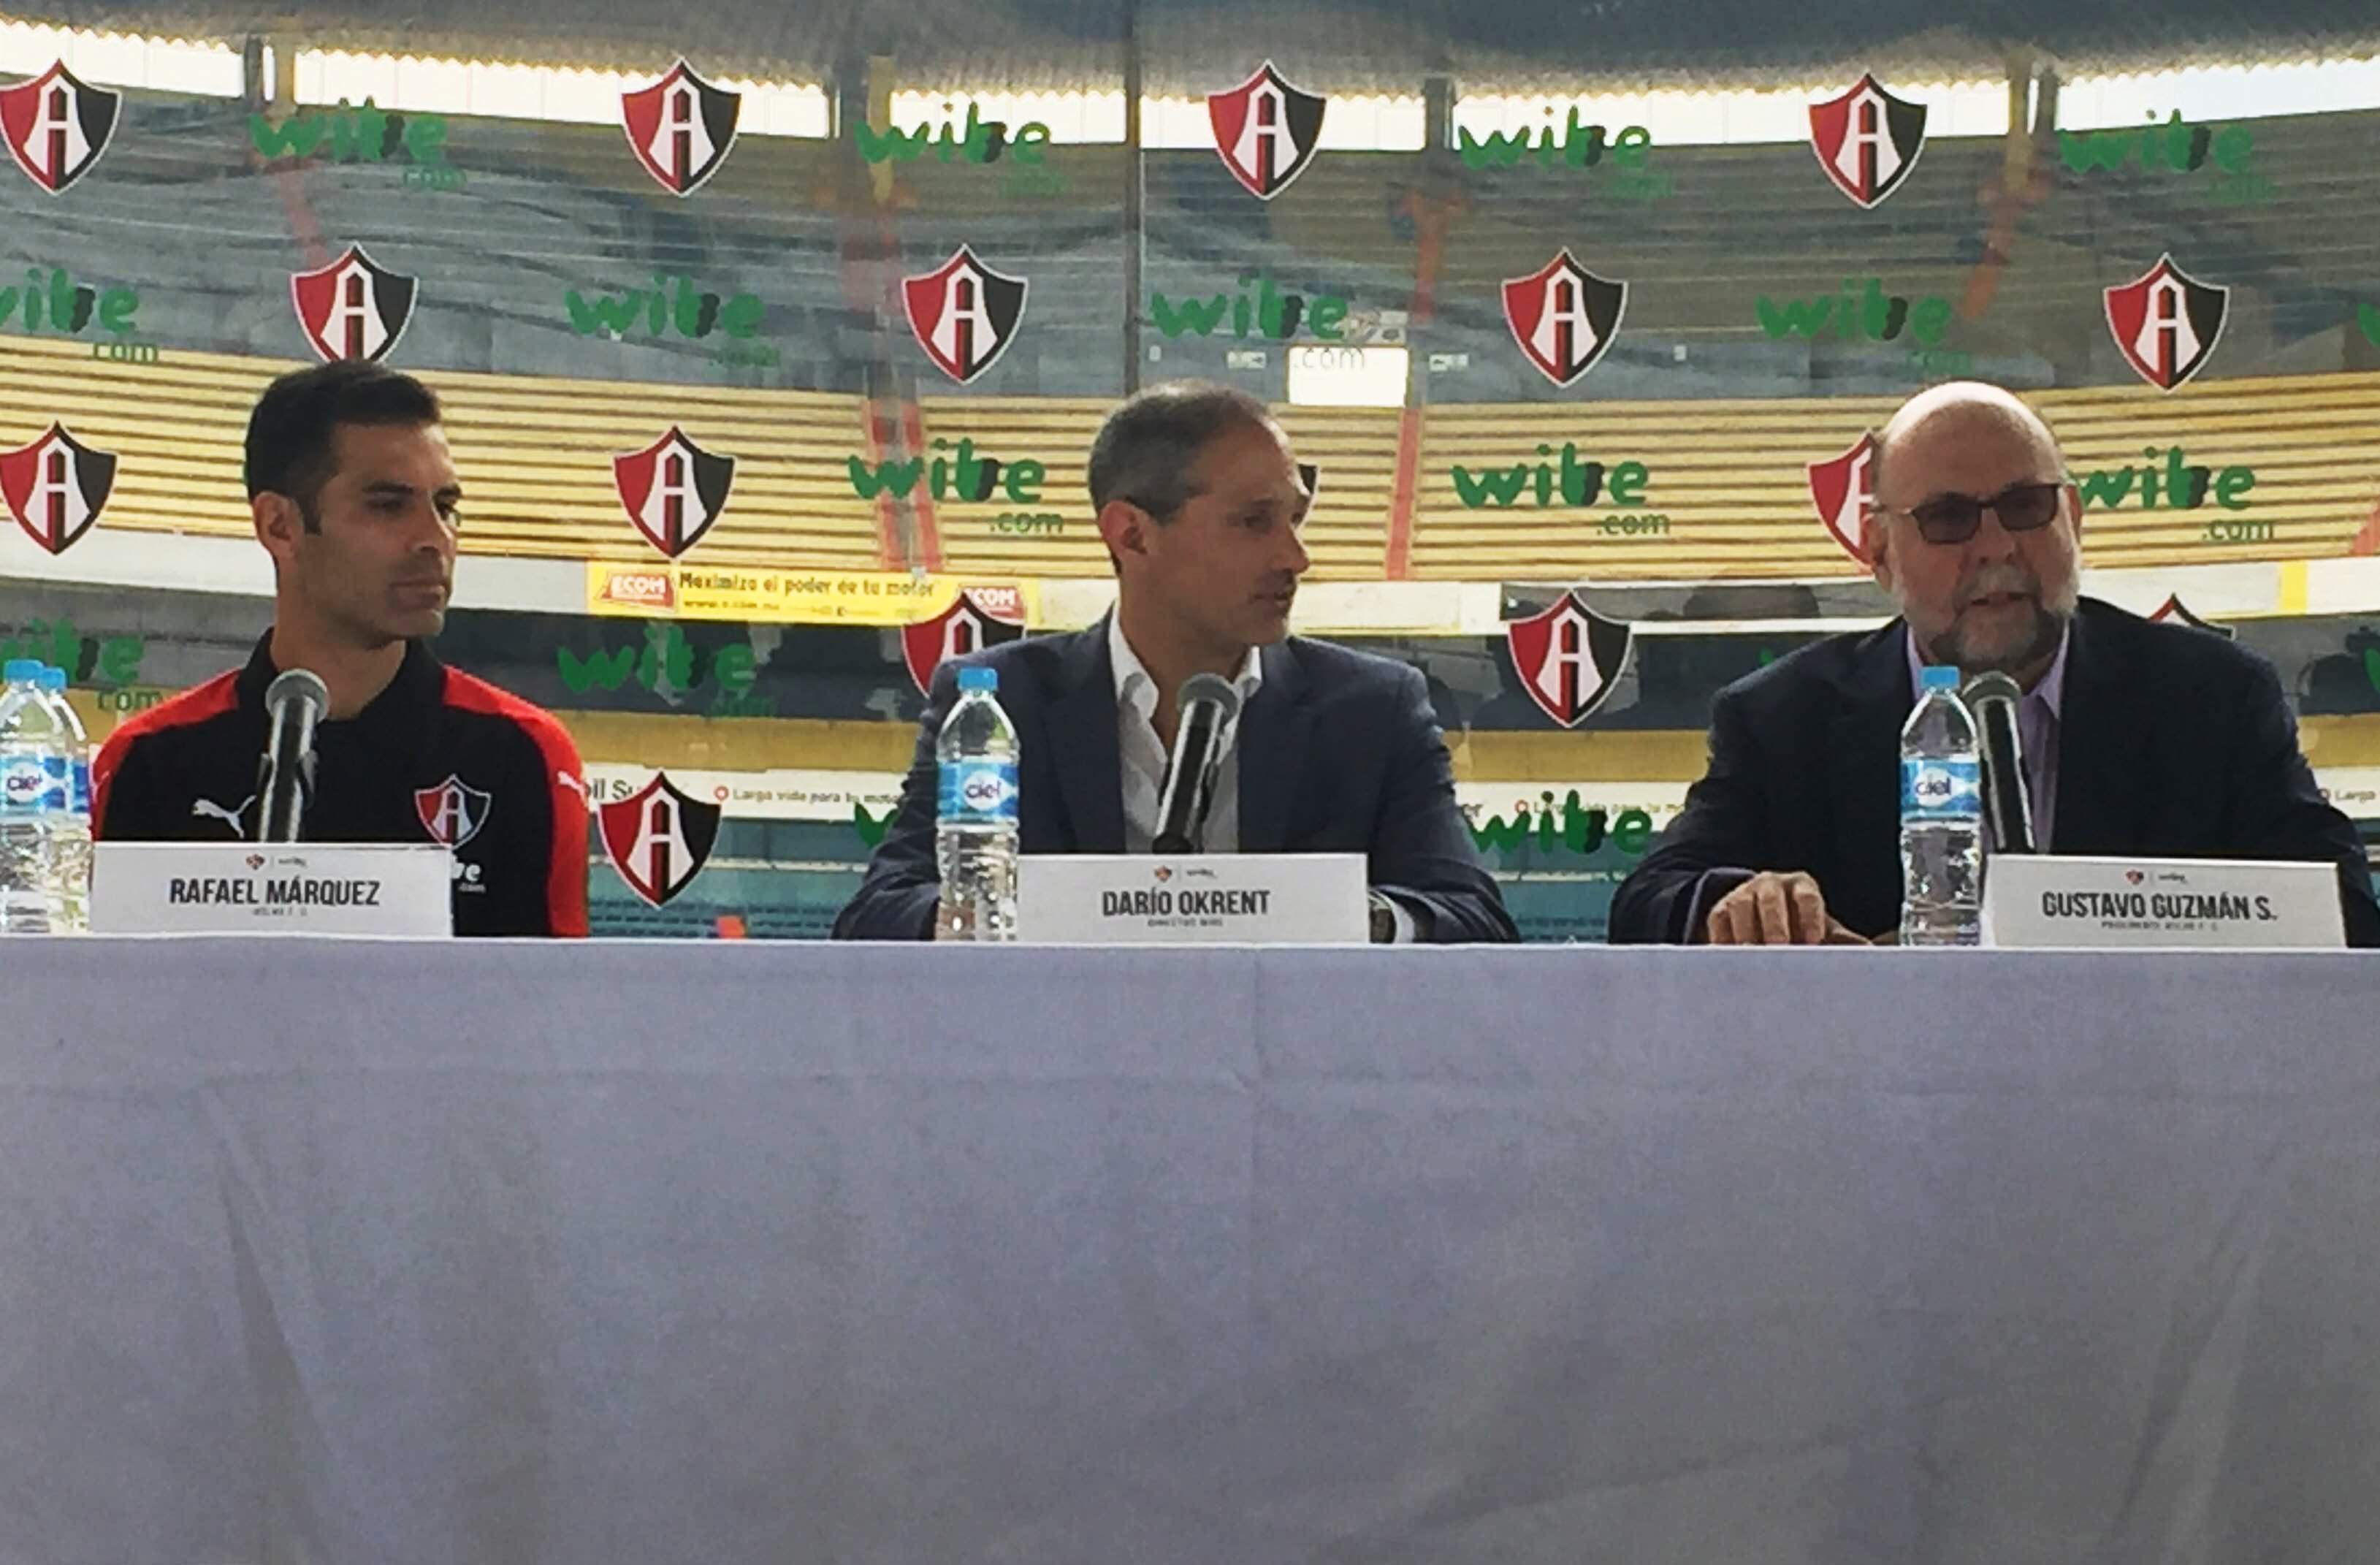 wibe será el nuevo patrocinador del equipo de fútbol Club Atlas de  Guadalajara | BBVA